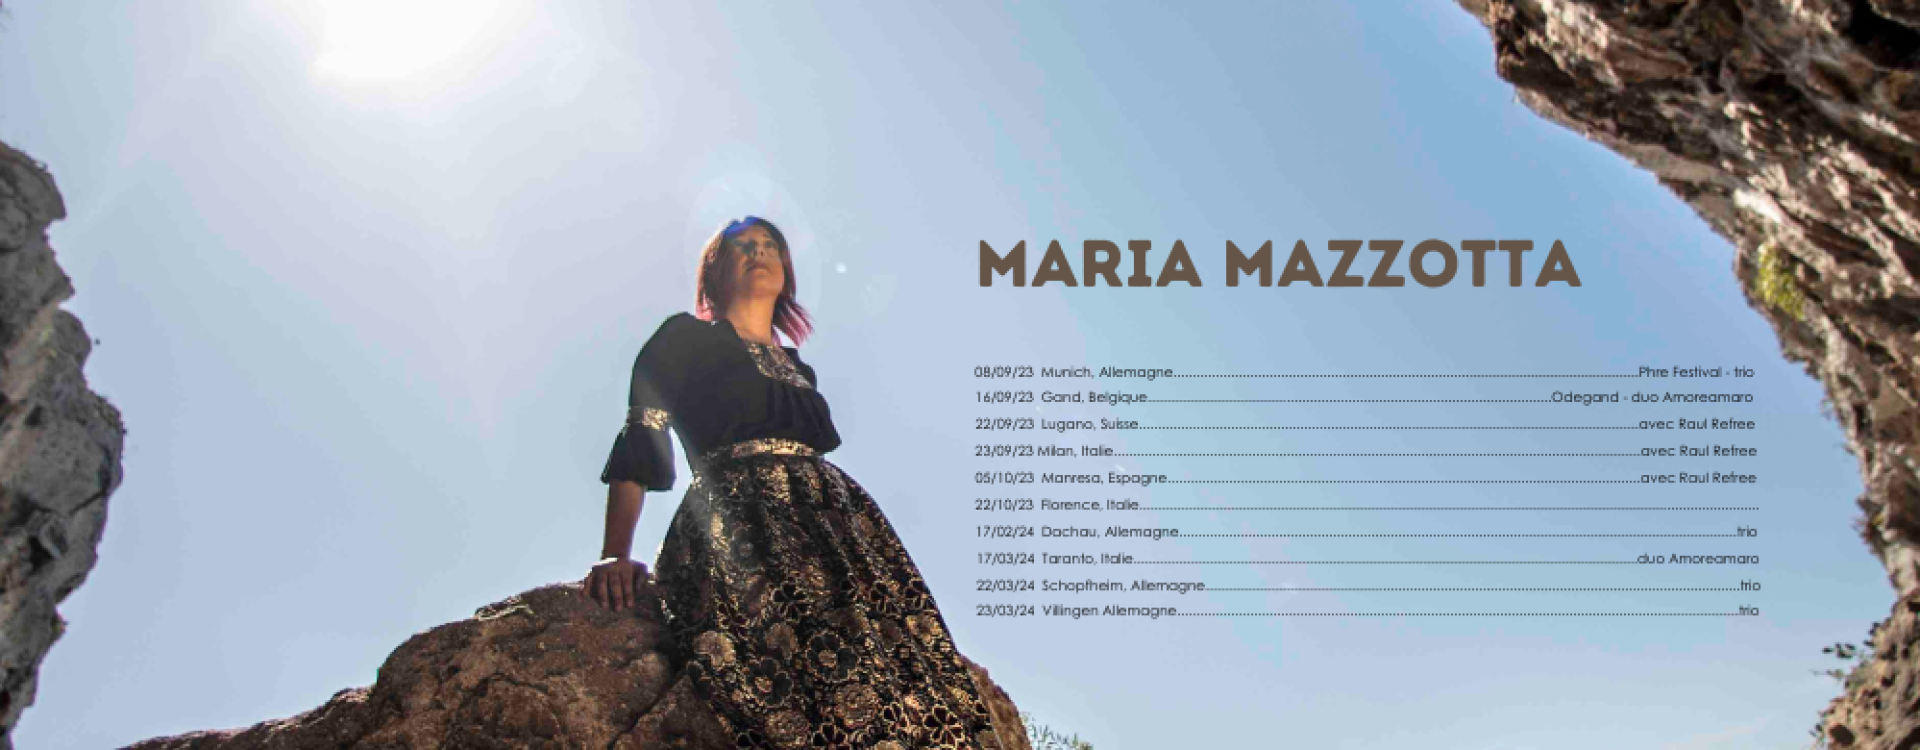 Maria Mazzotta en concert